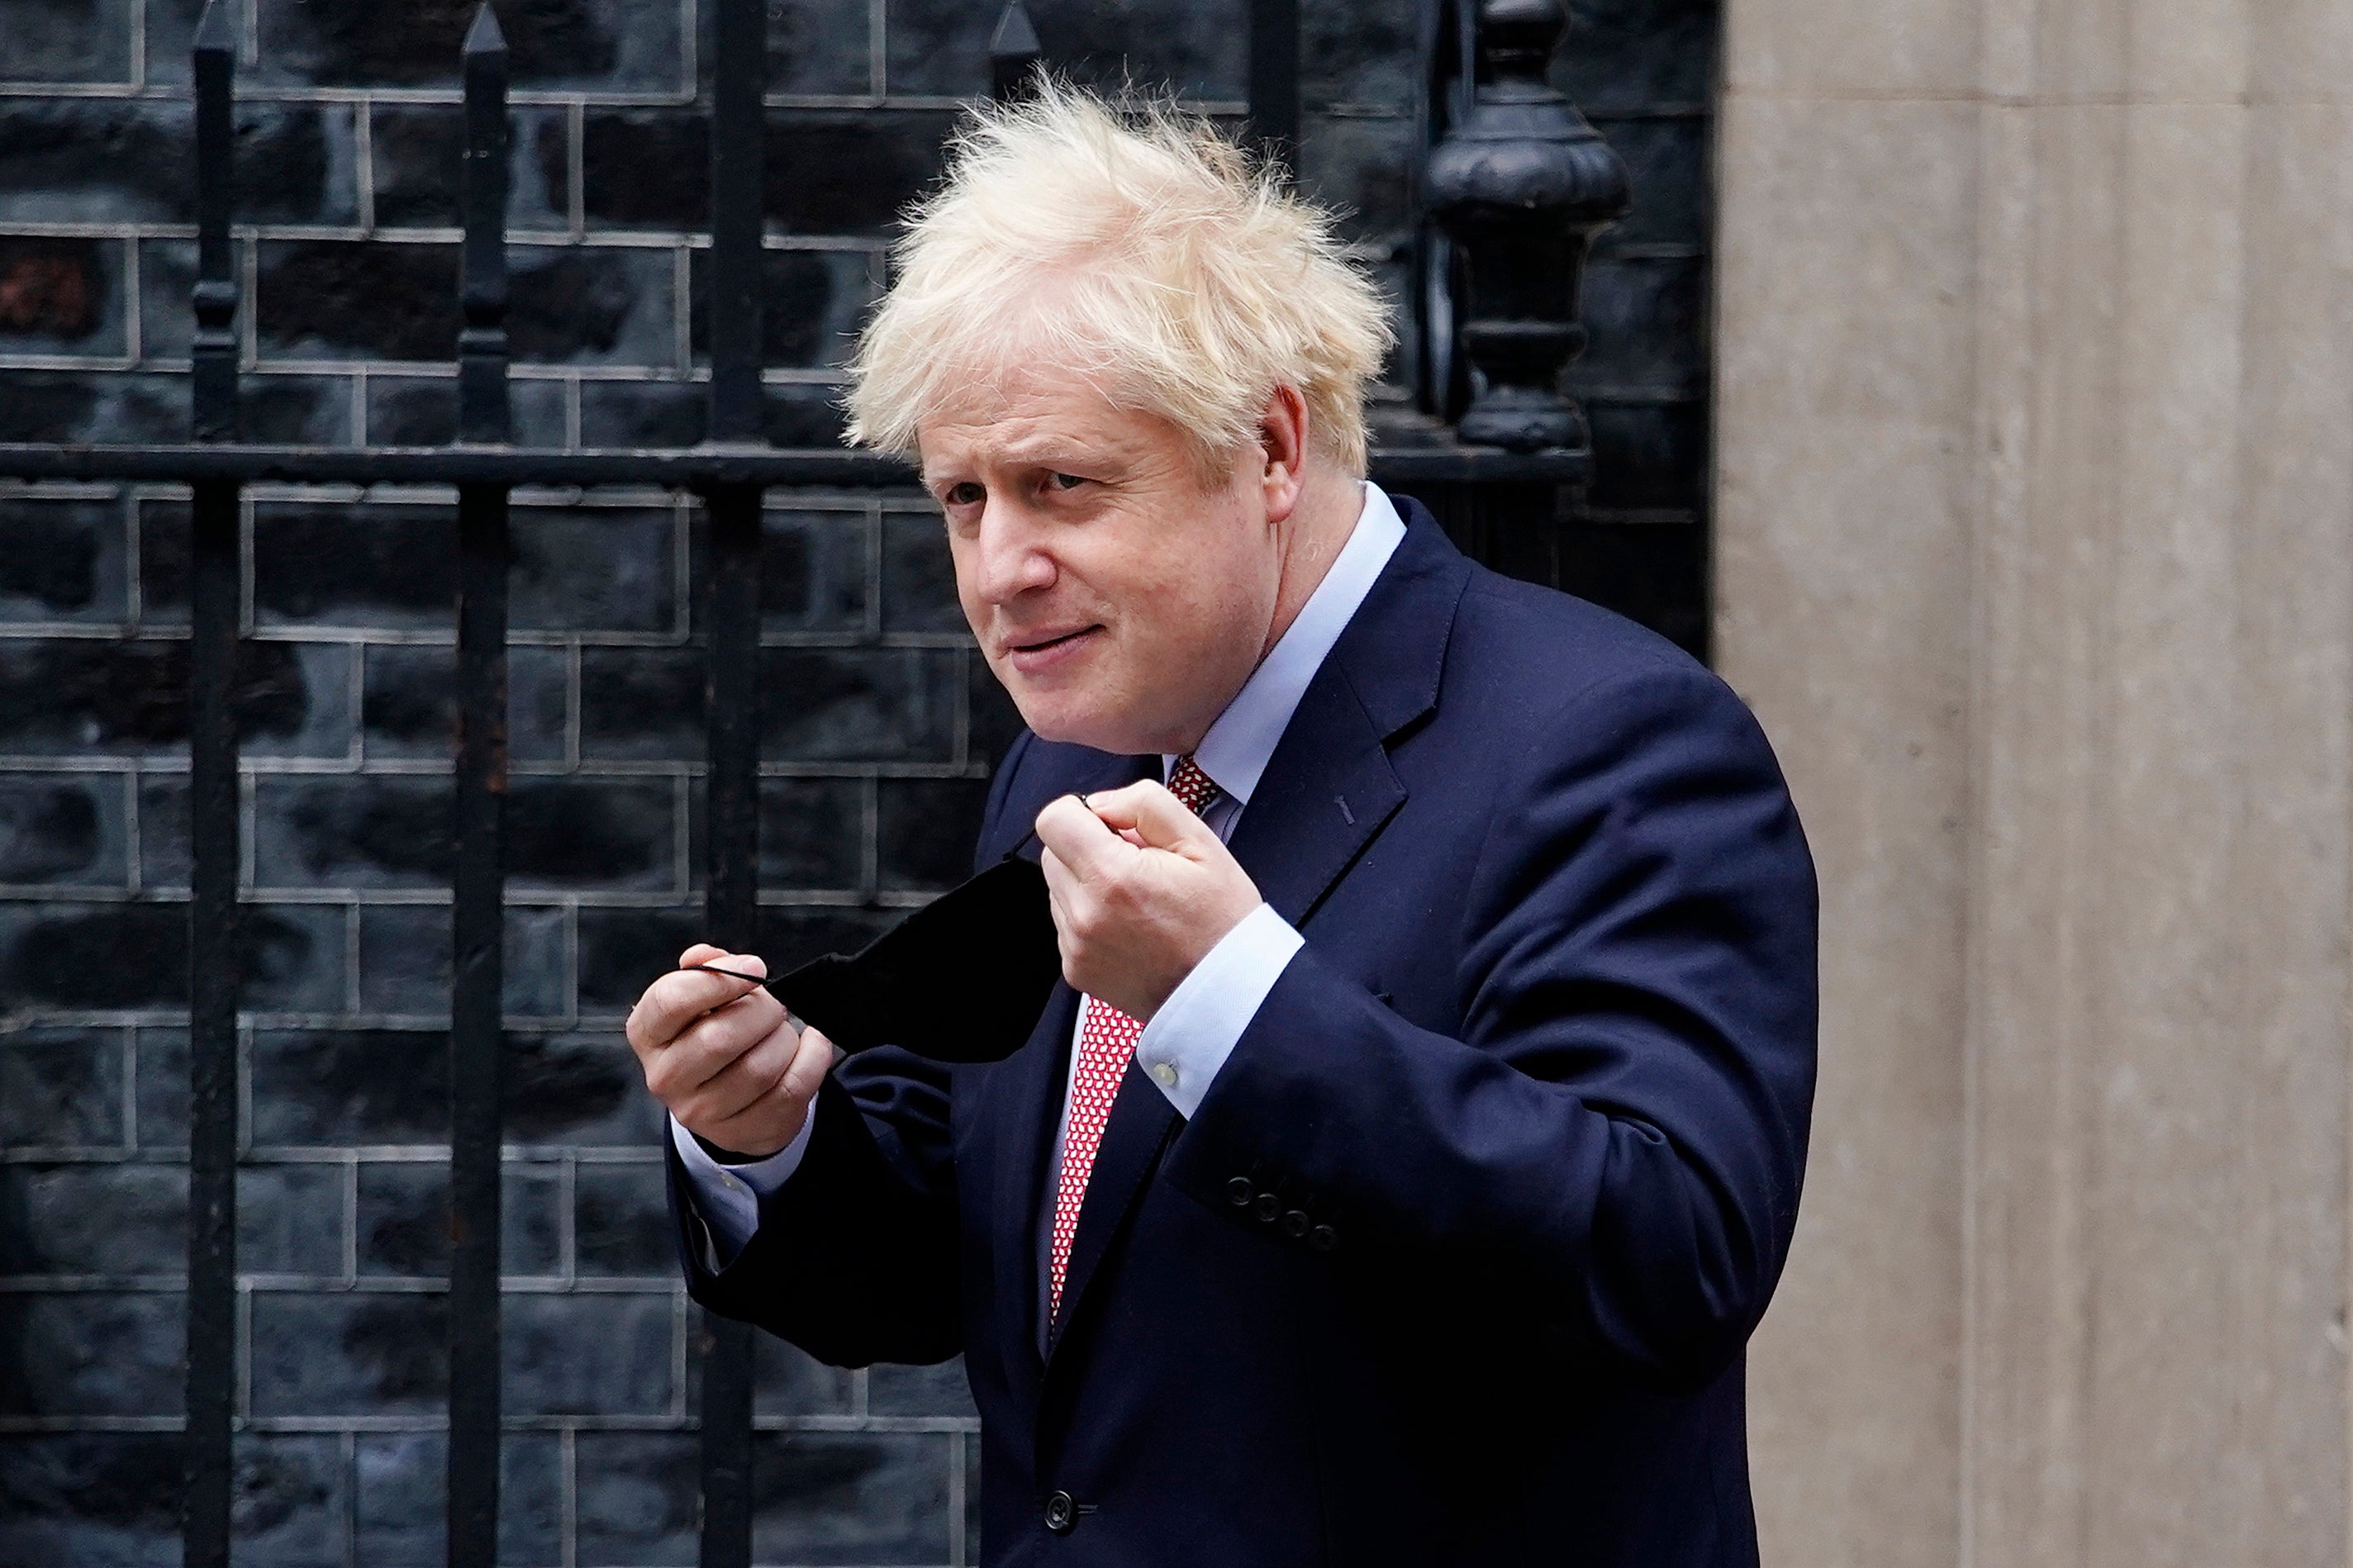 Boris Johnson outside No 10